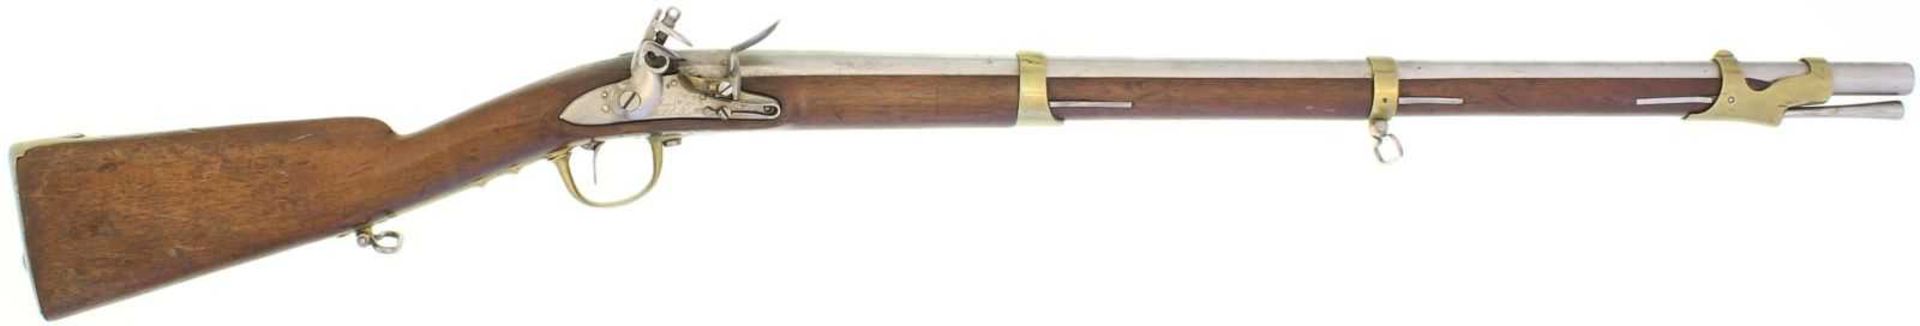 Steinschlossgewehr, franz. 1777, Eidg. Ord. 1817, Genie oder Polizei, Kal. 18mm LL 760mm, TL 1155mm,